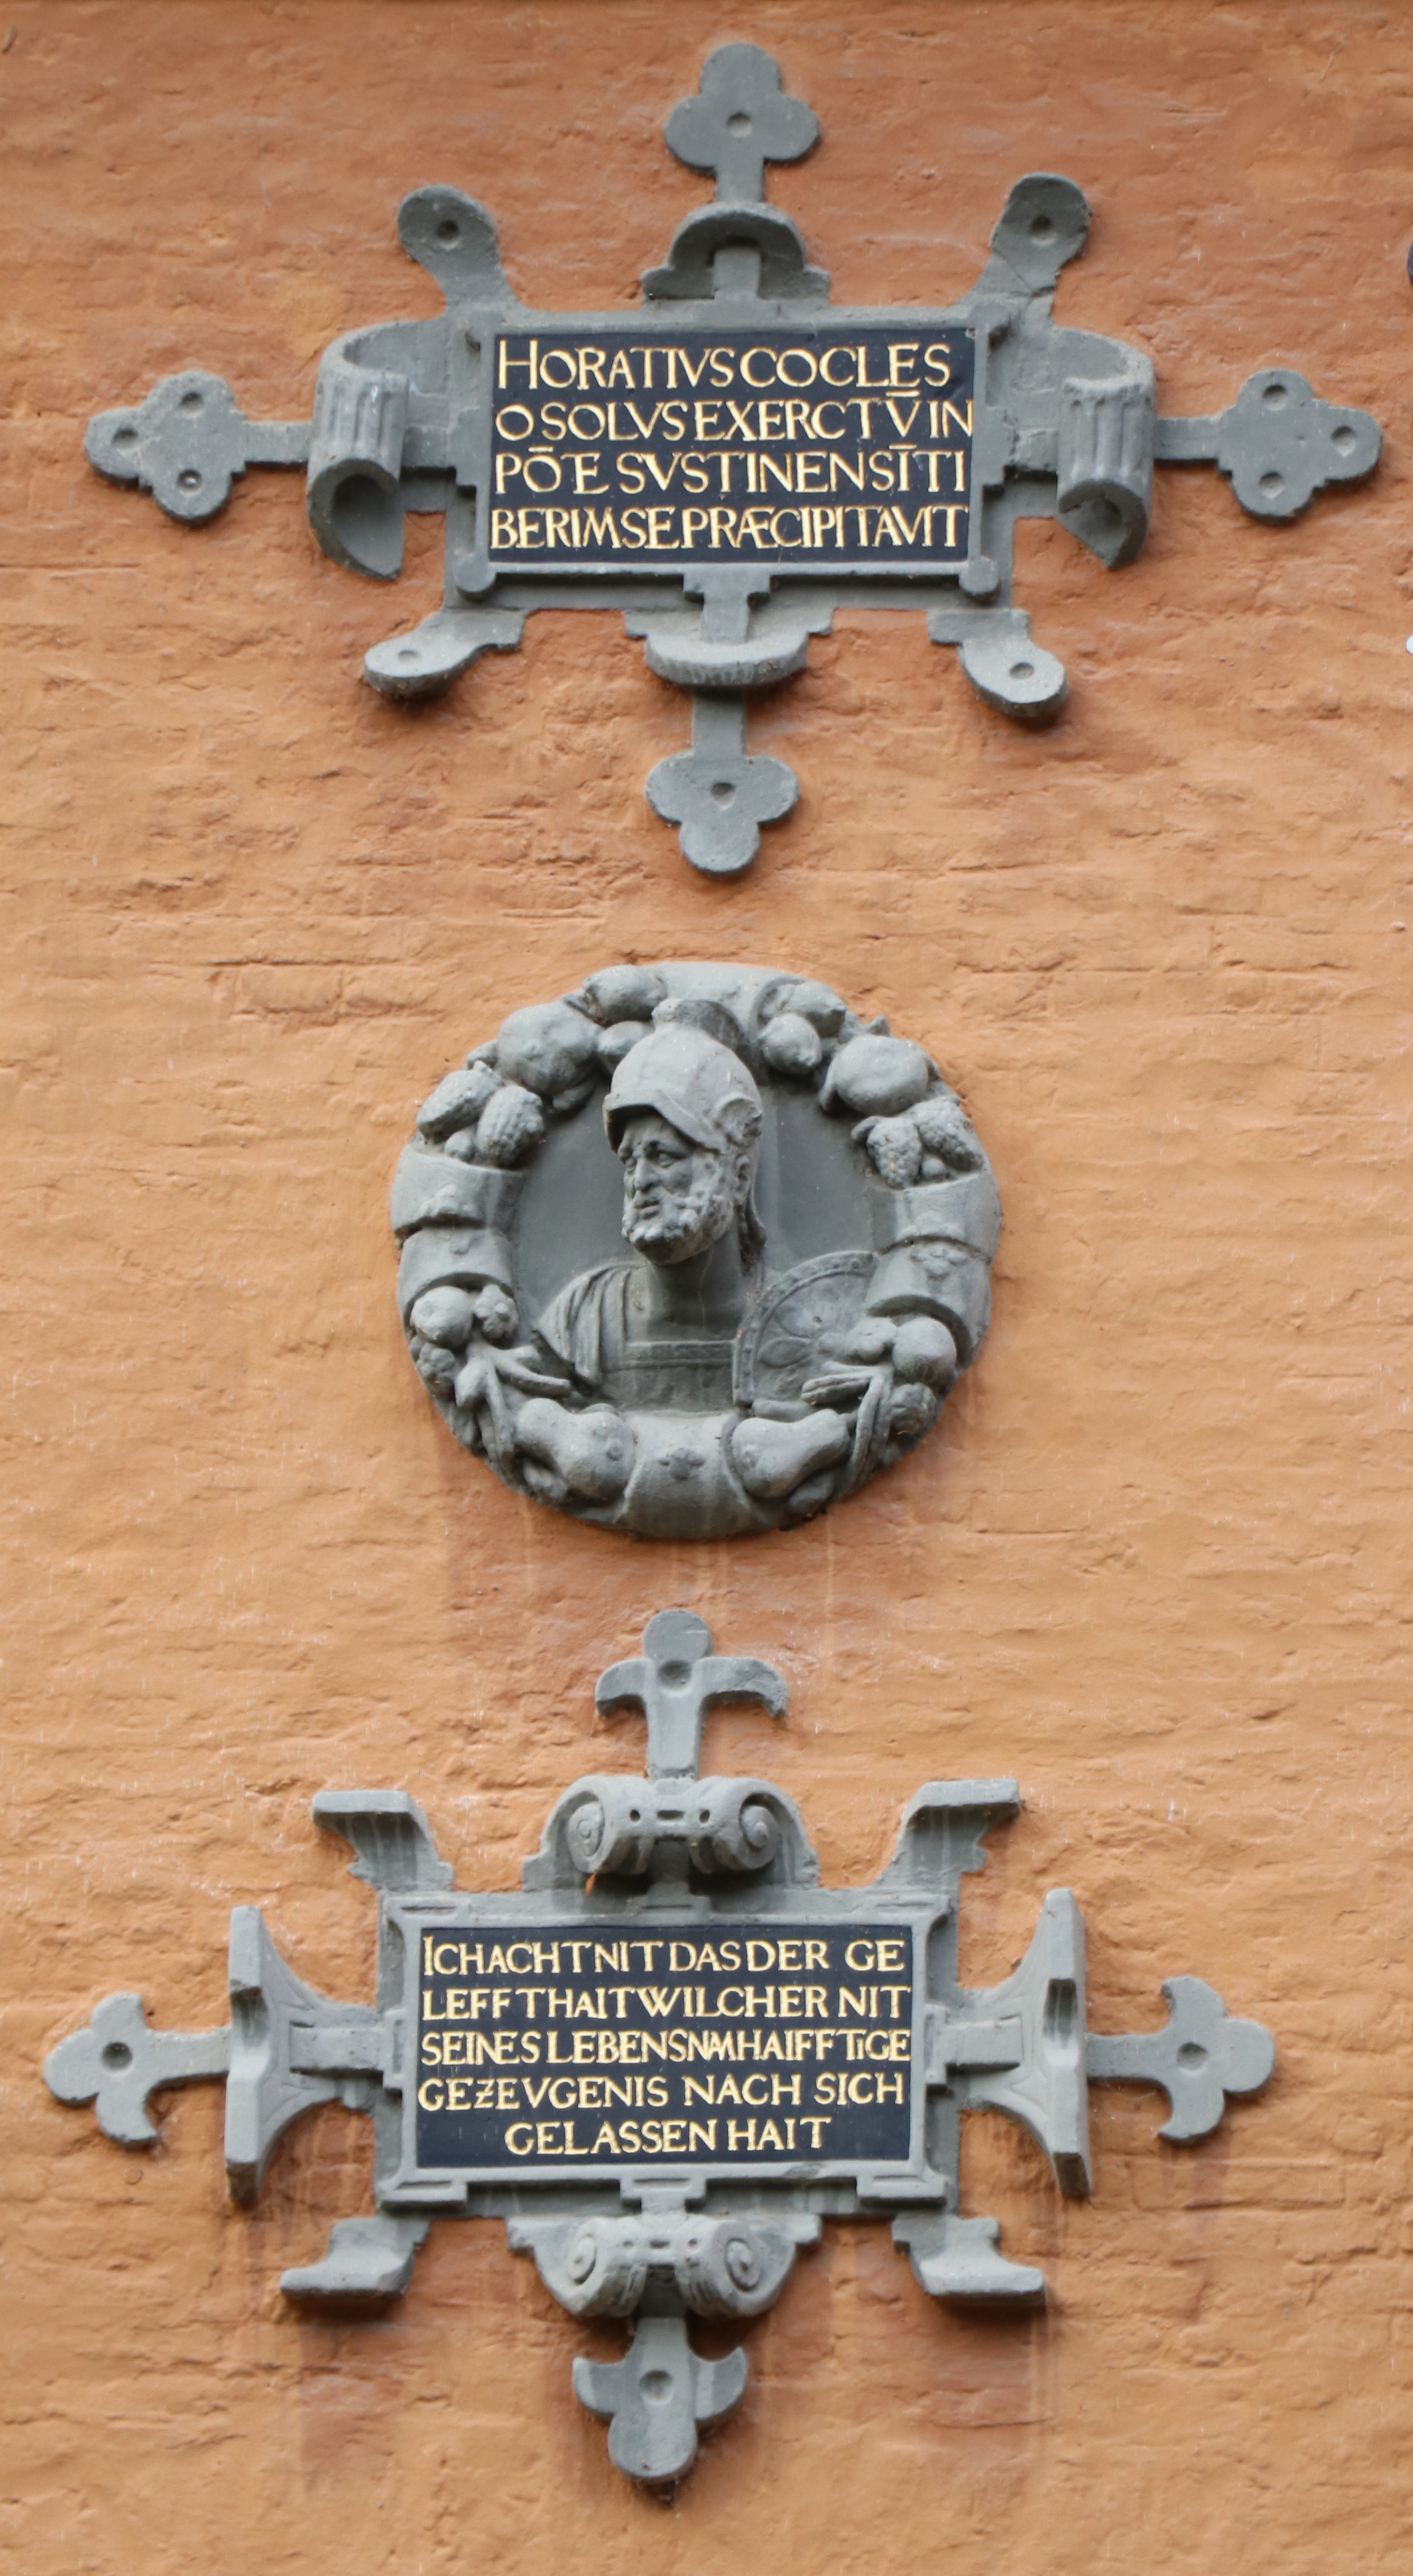 Rheydter Tondo mit Publius Horatius Cocles, 16. Jahrhundert (Städtisches Museum Schloss Rheydt CC BY)